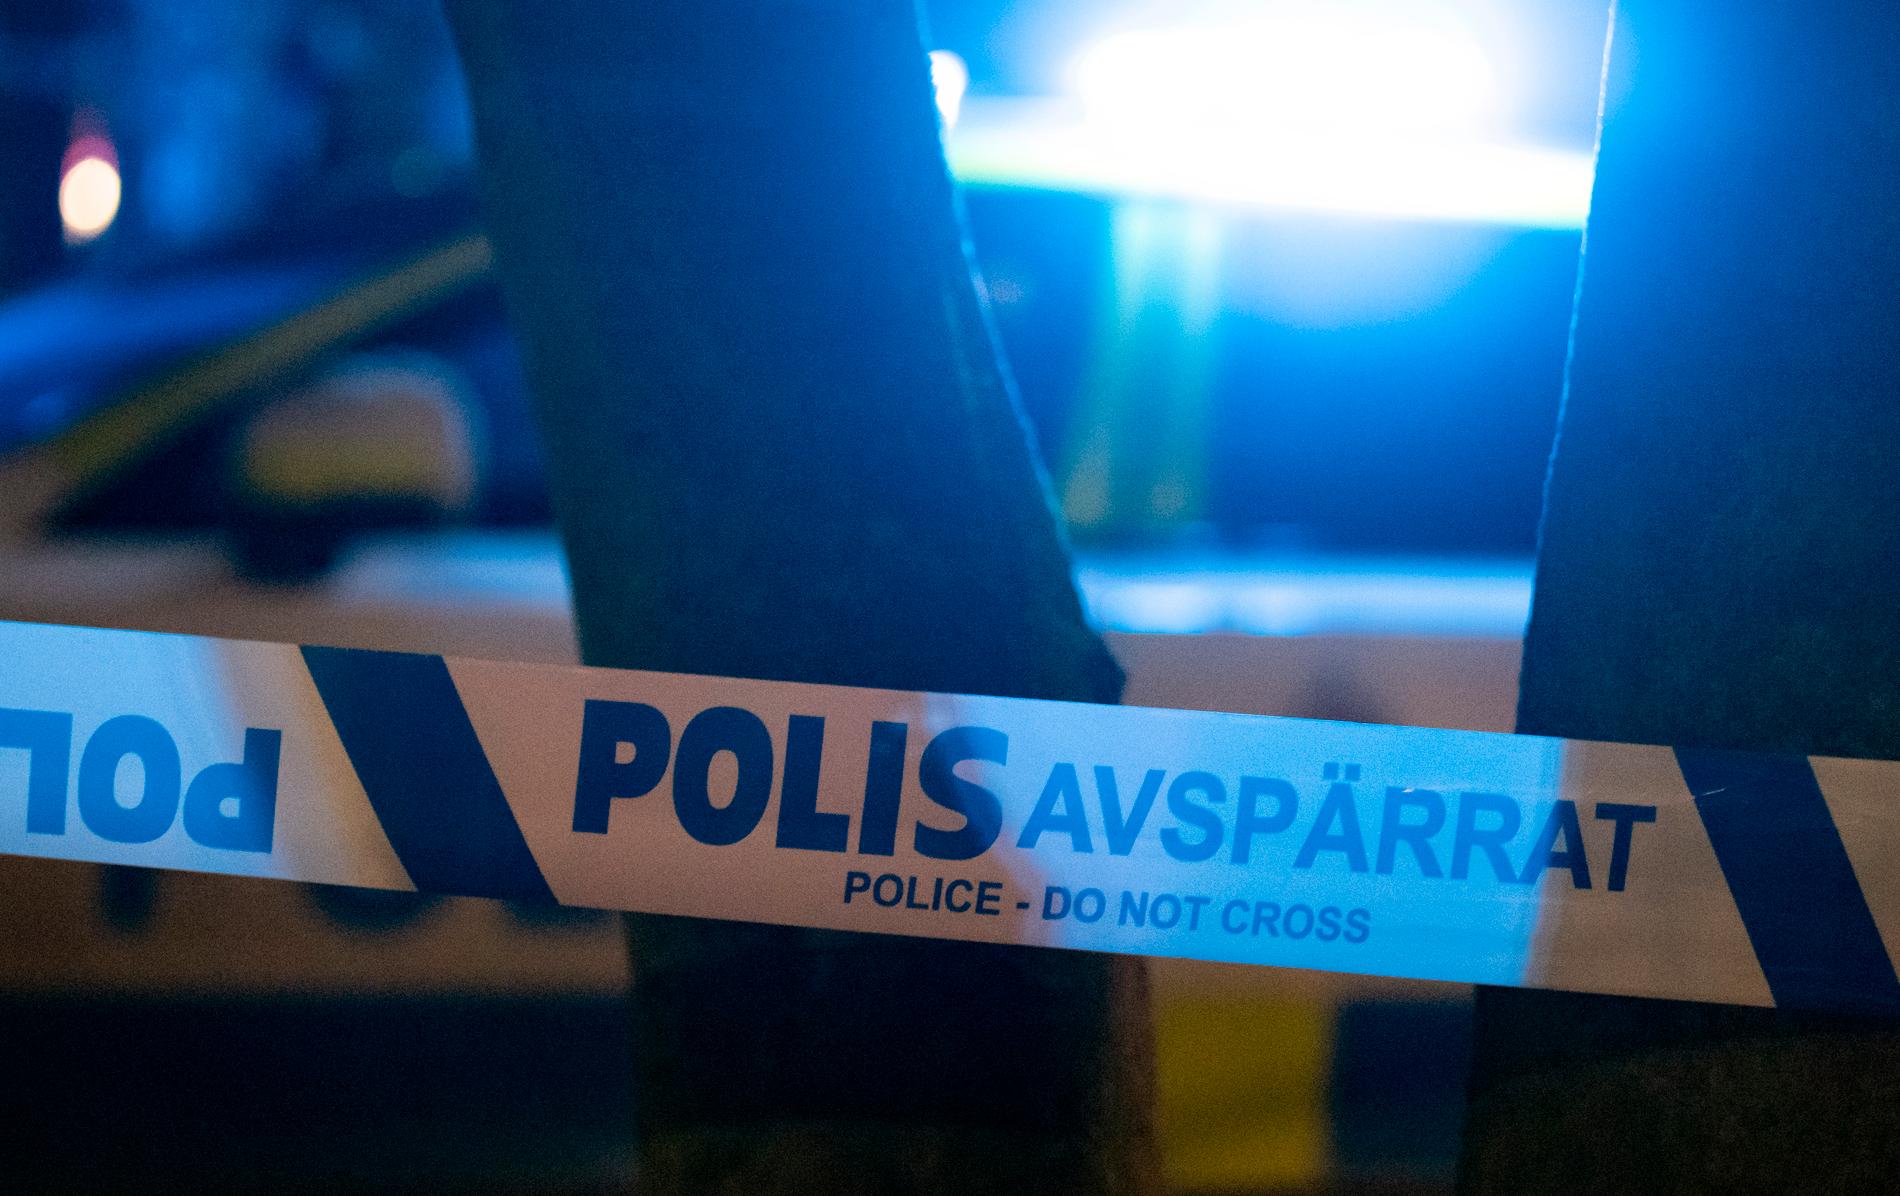 En butik i Norrköping utsattes för en smash and grab-kupp i natt. Arkivbild.